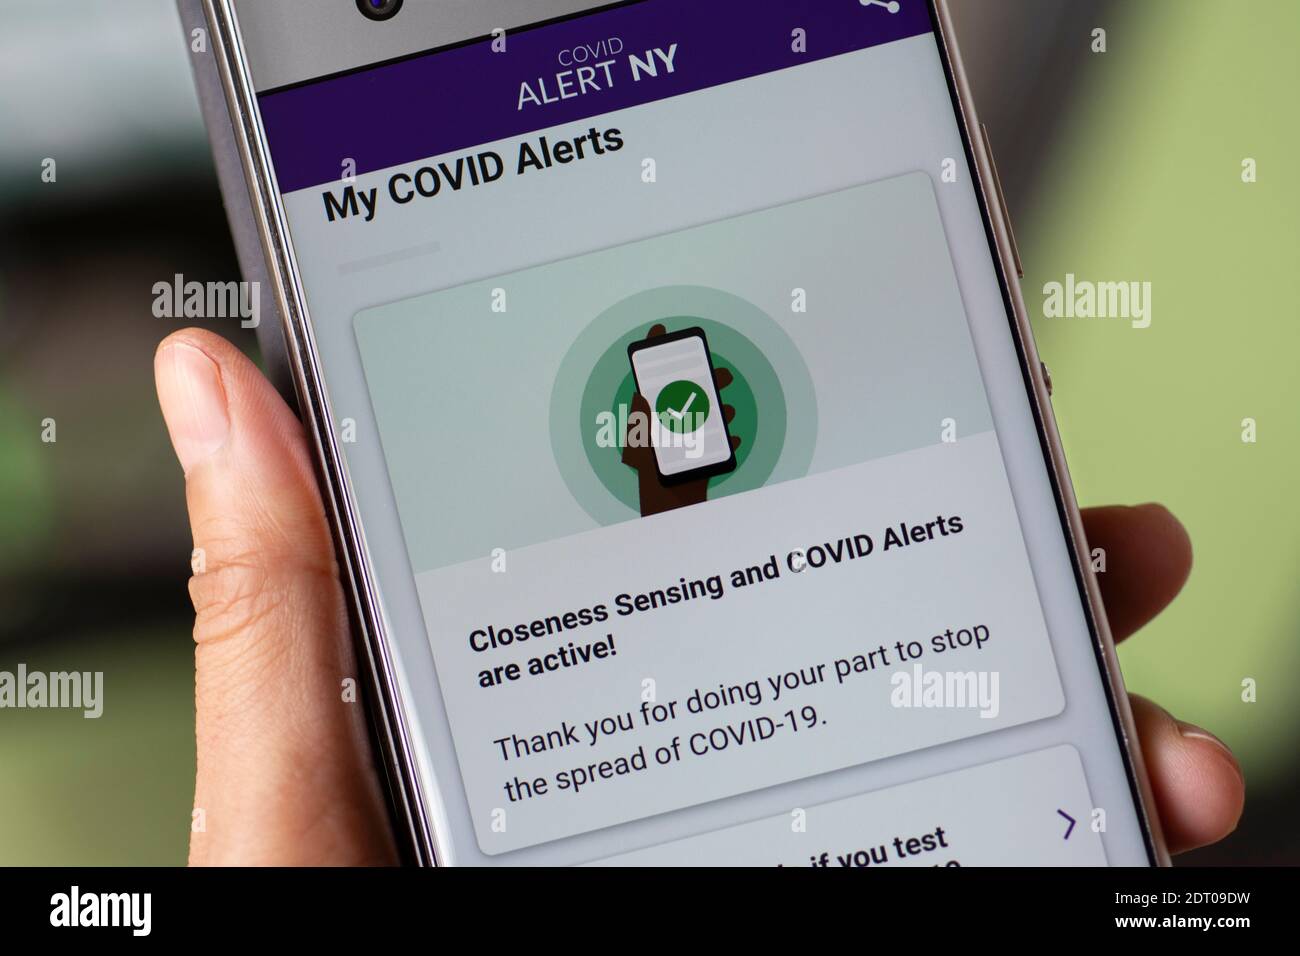 Application COVID Alert NY sur téléphone mobile, écran de smartphone Banque D'Images